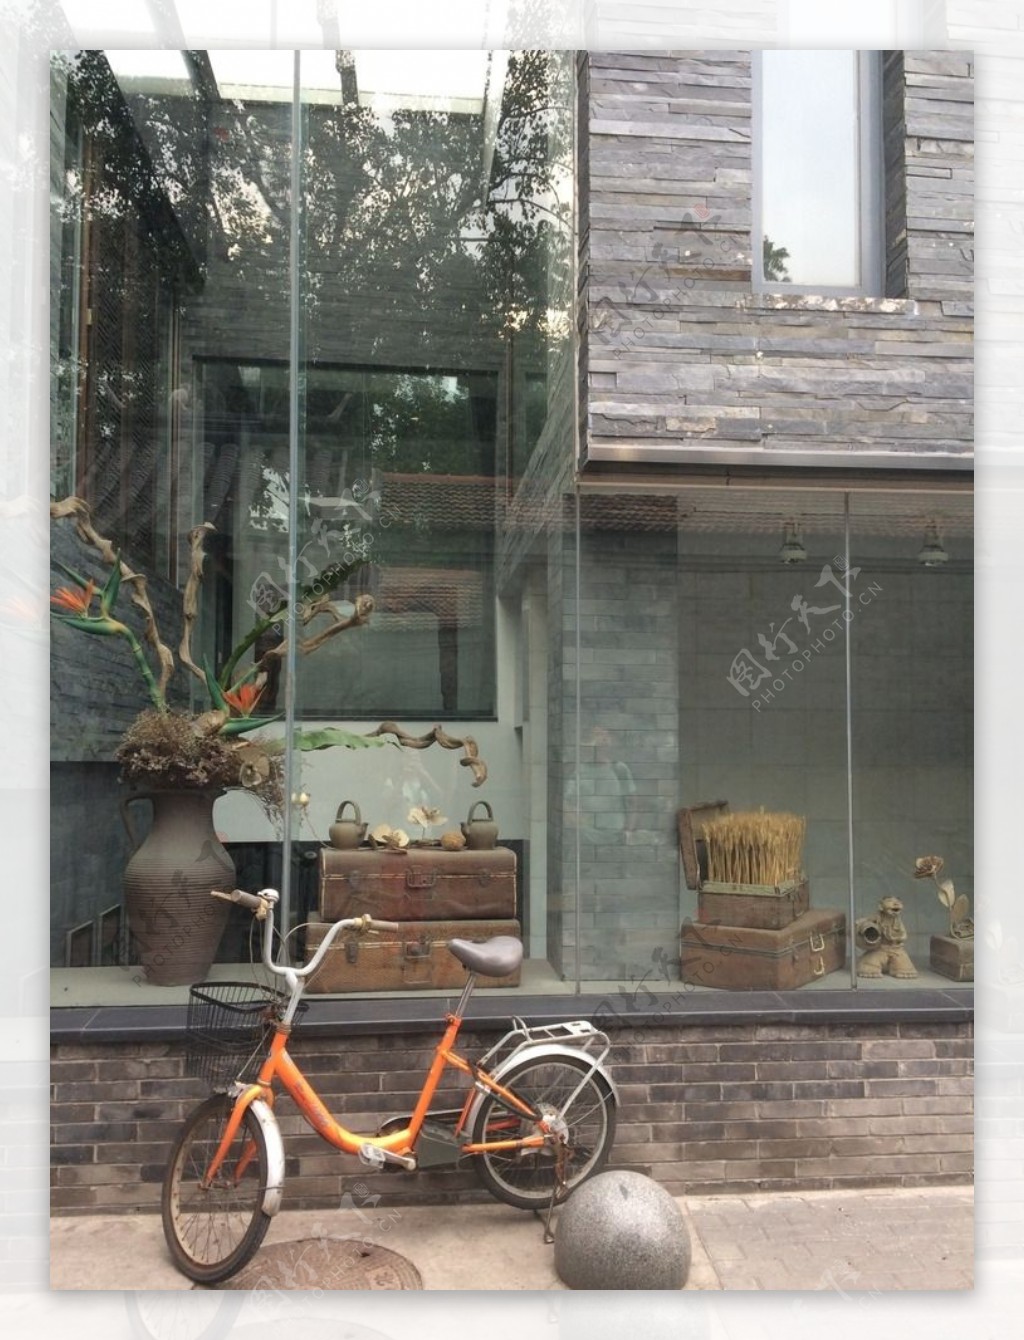 北京胡同自行车图片